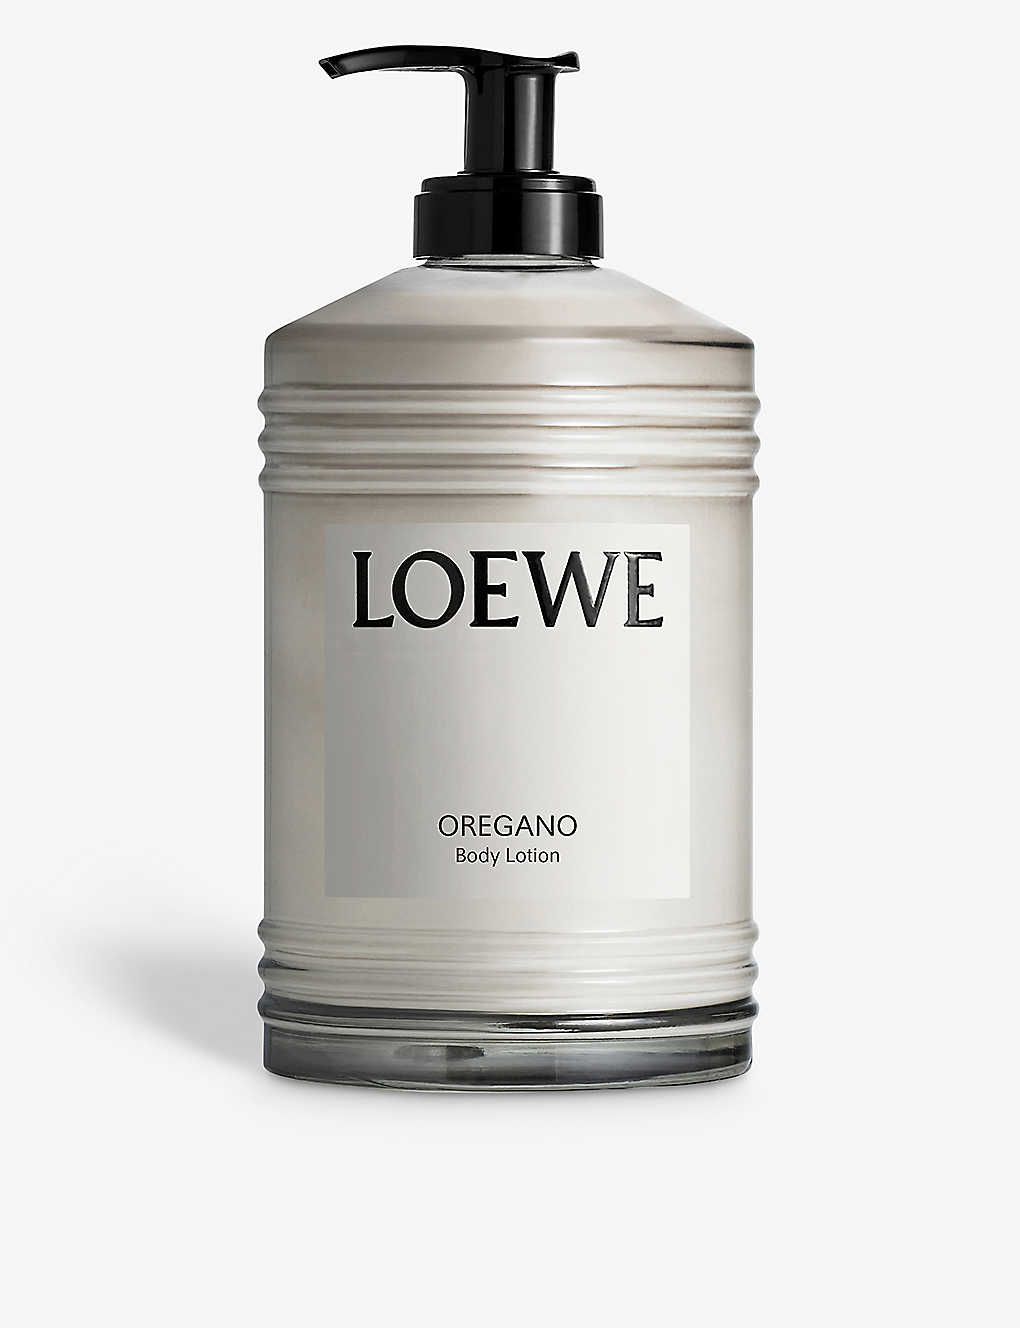 Loewe Oregano Body Lotion In White